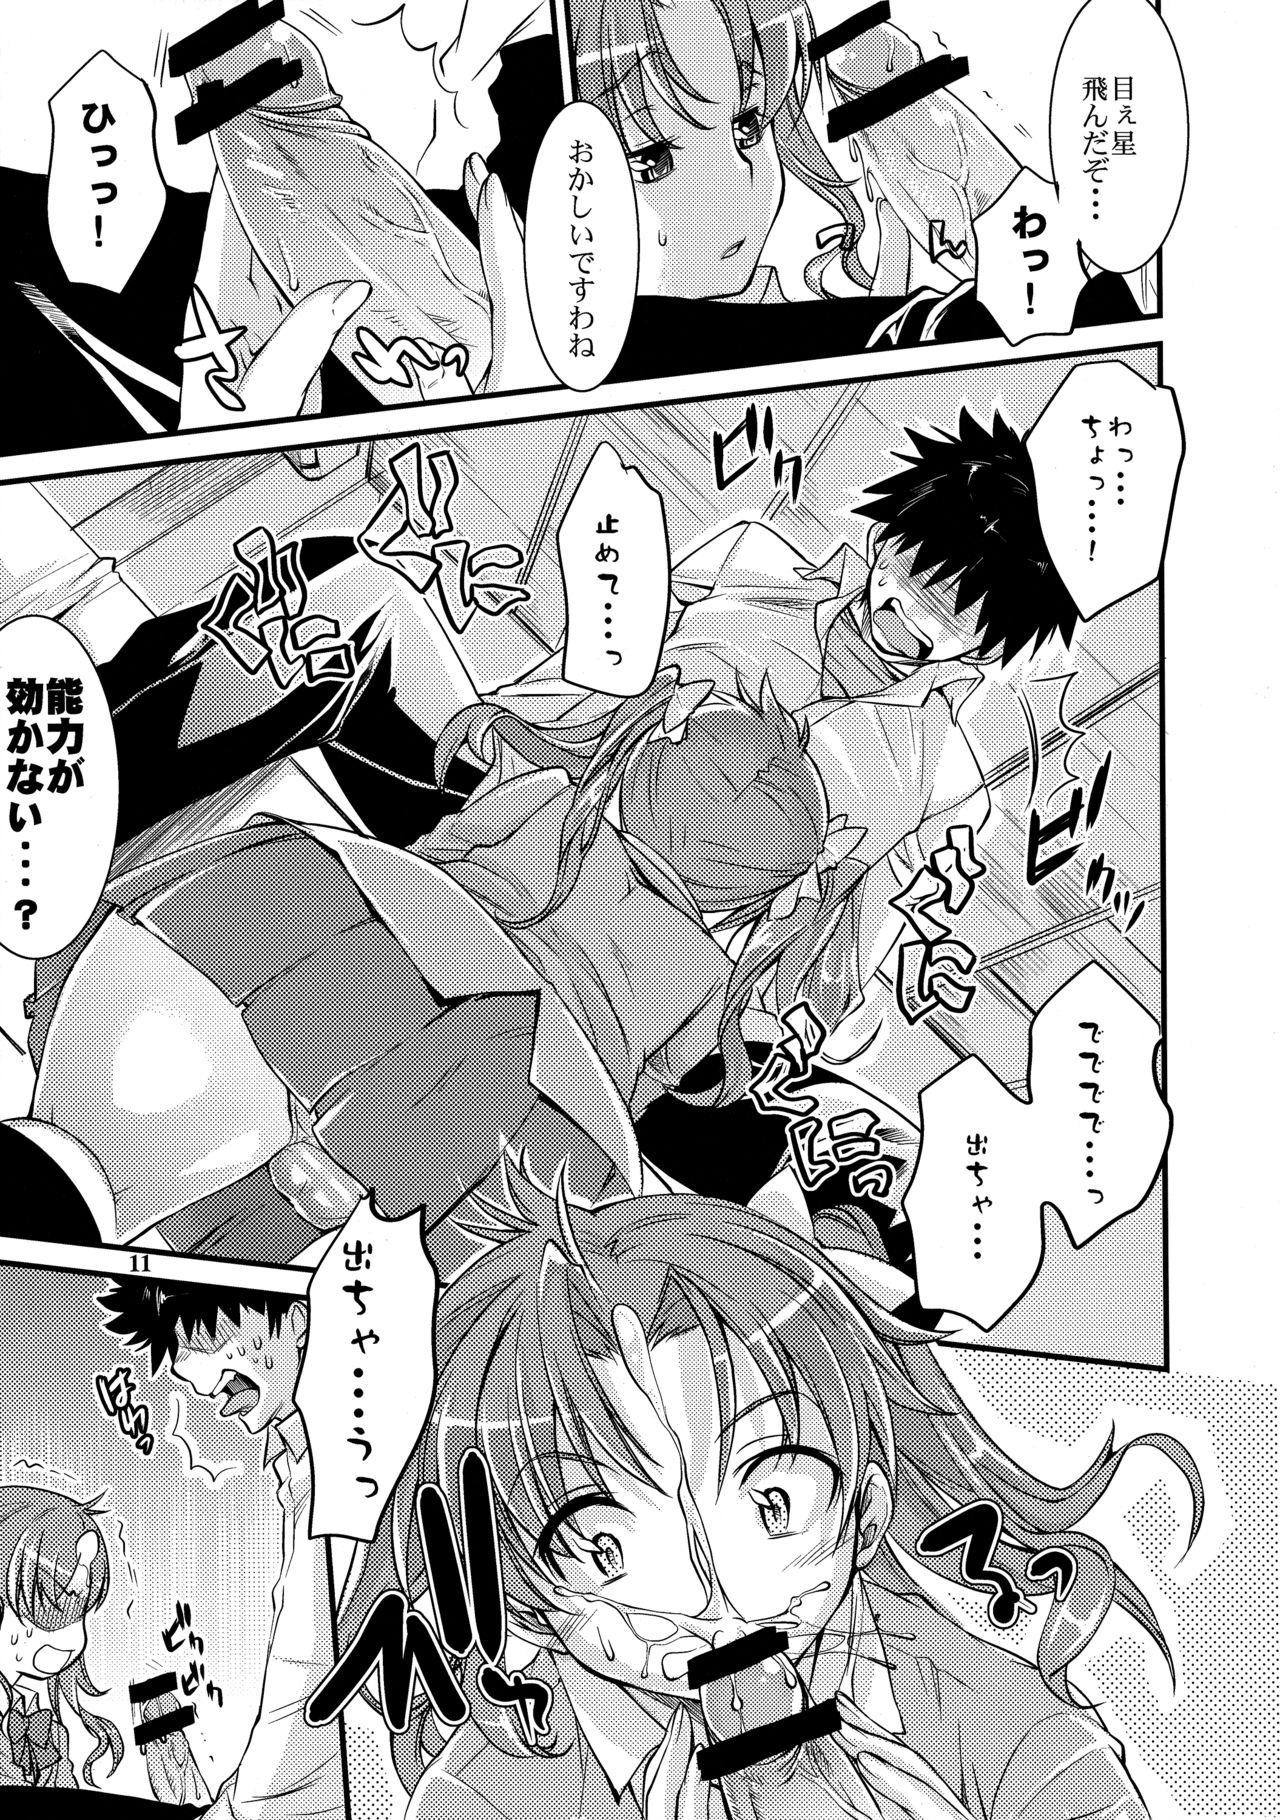 Lesbiansex Toaru Kagaku no Judgement 4 - Toaru kagaku no railgun Naturaltits - Page 10